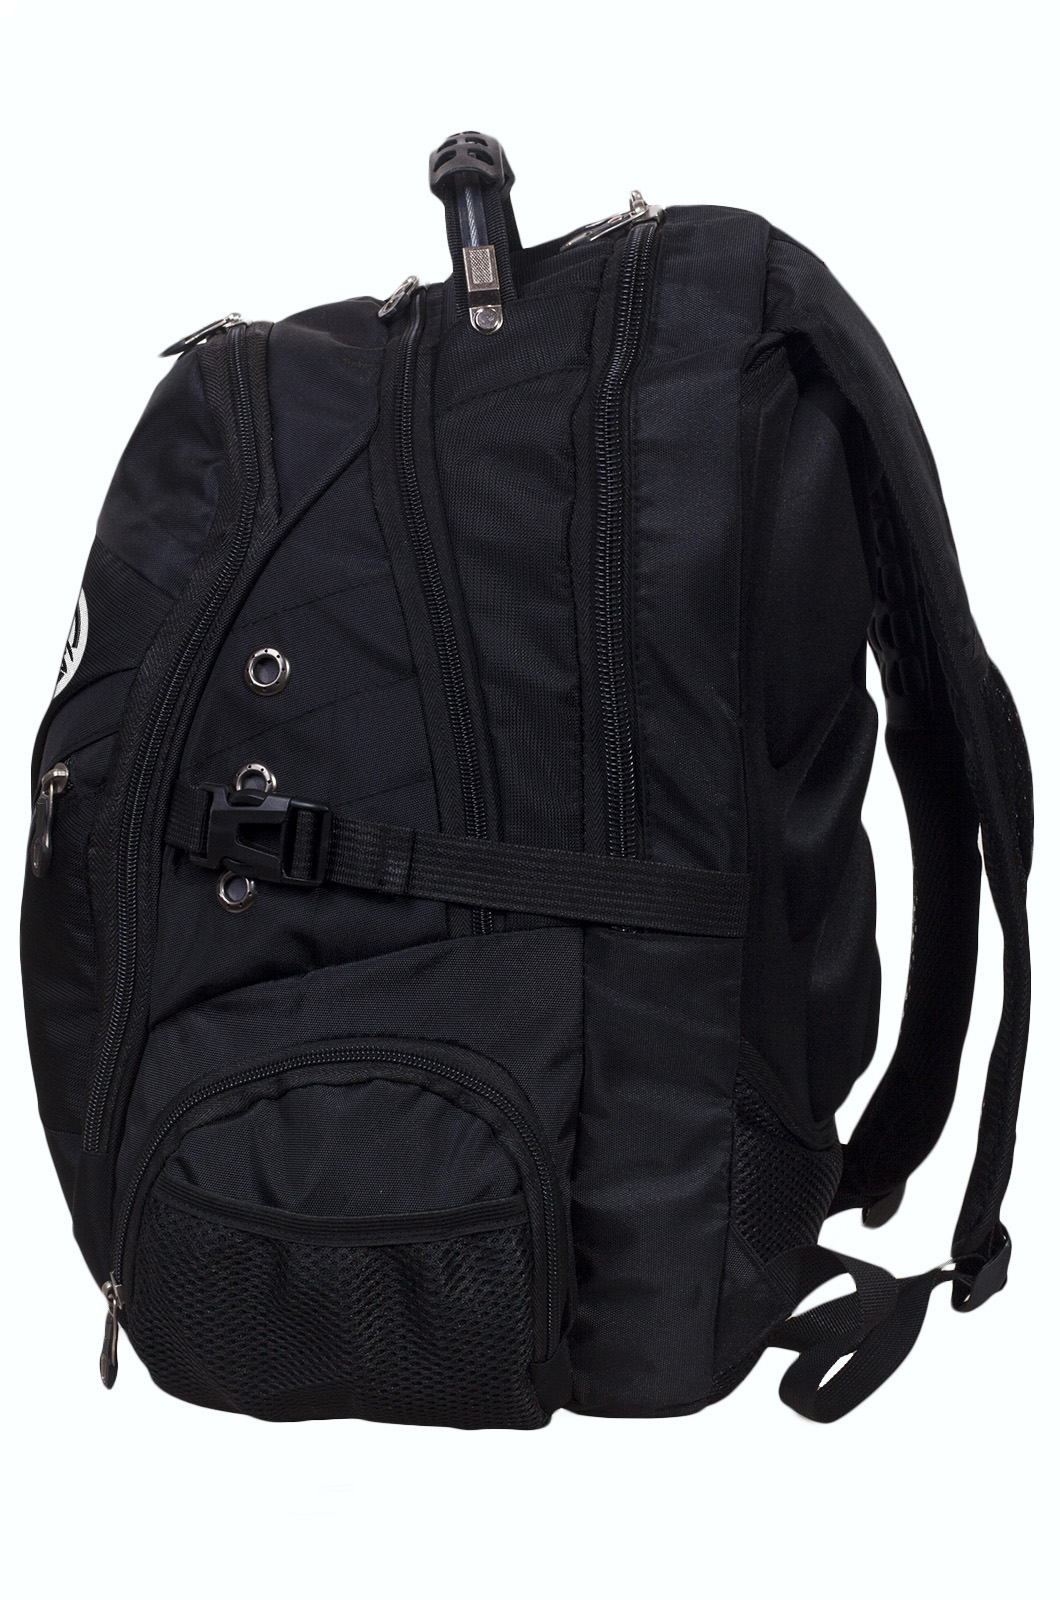 Черный рюкзак с эмблемой Торез Оплот Спецназ (36 - 55 л) 